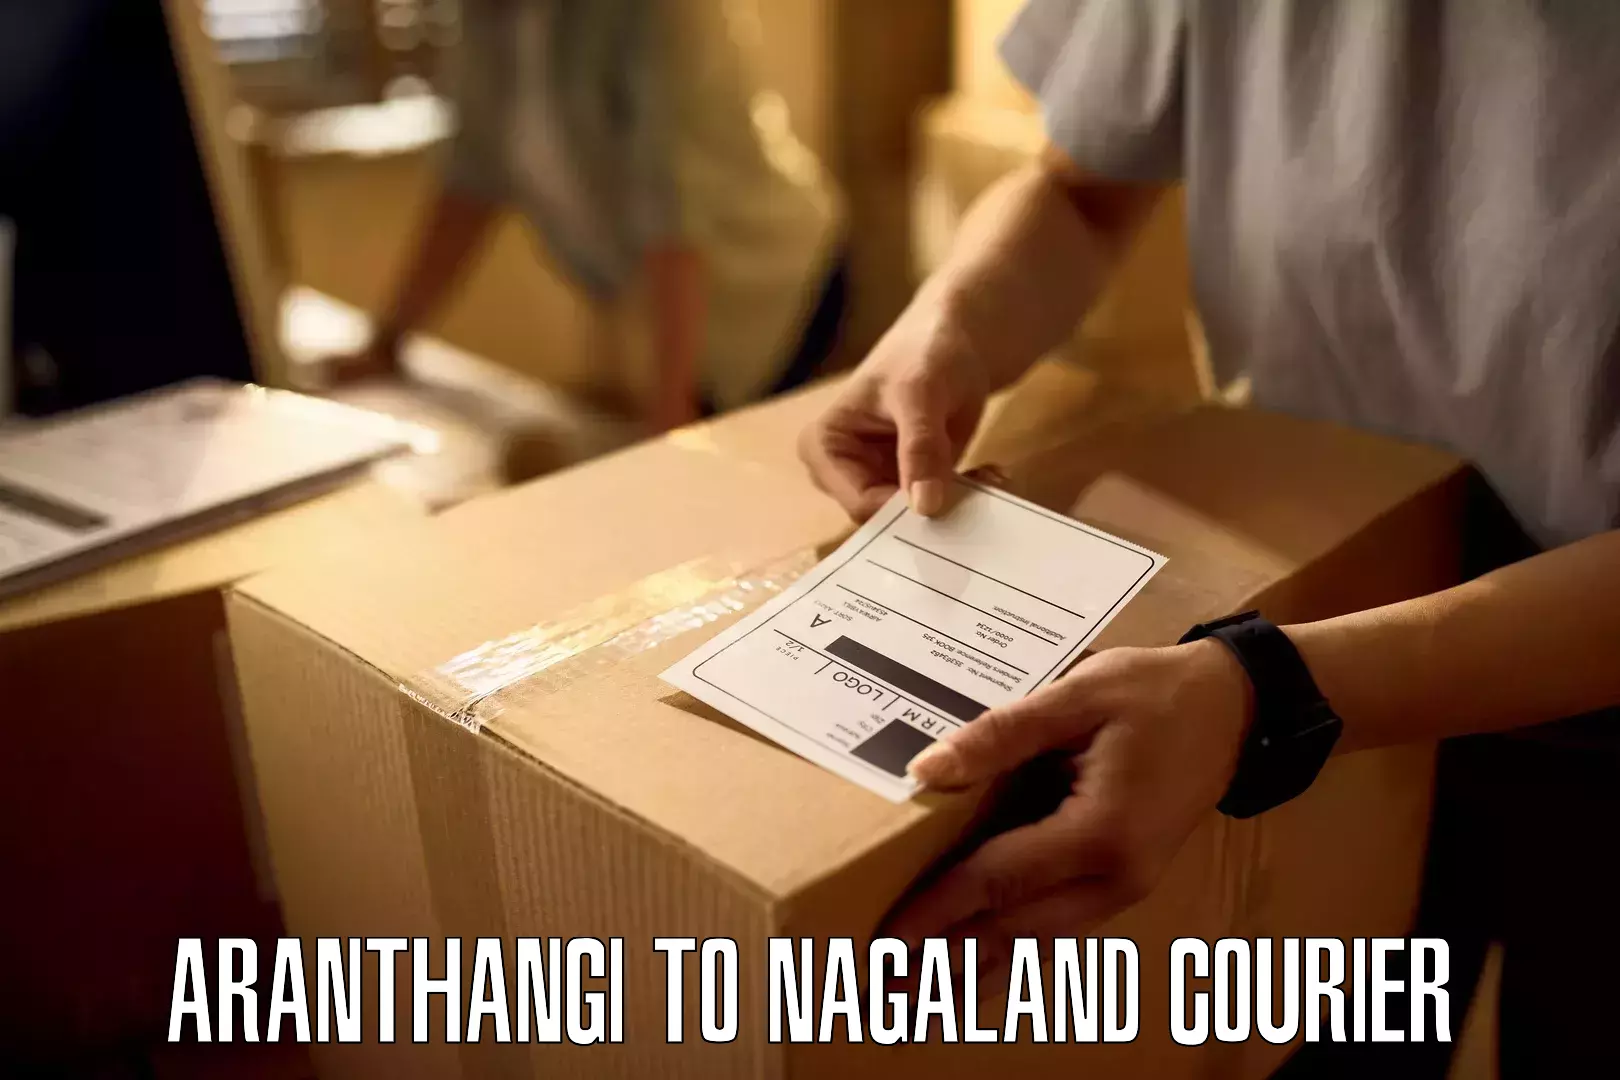 Expedited shipping methods Aranthangi to Nagaland